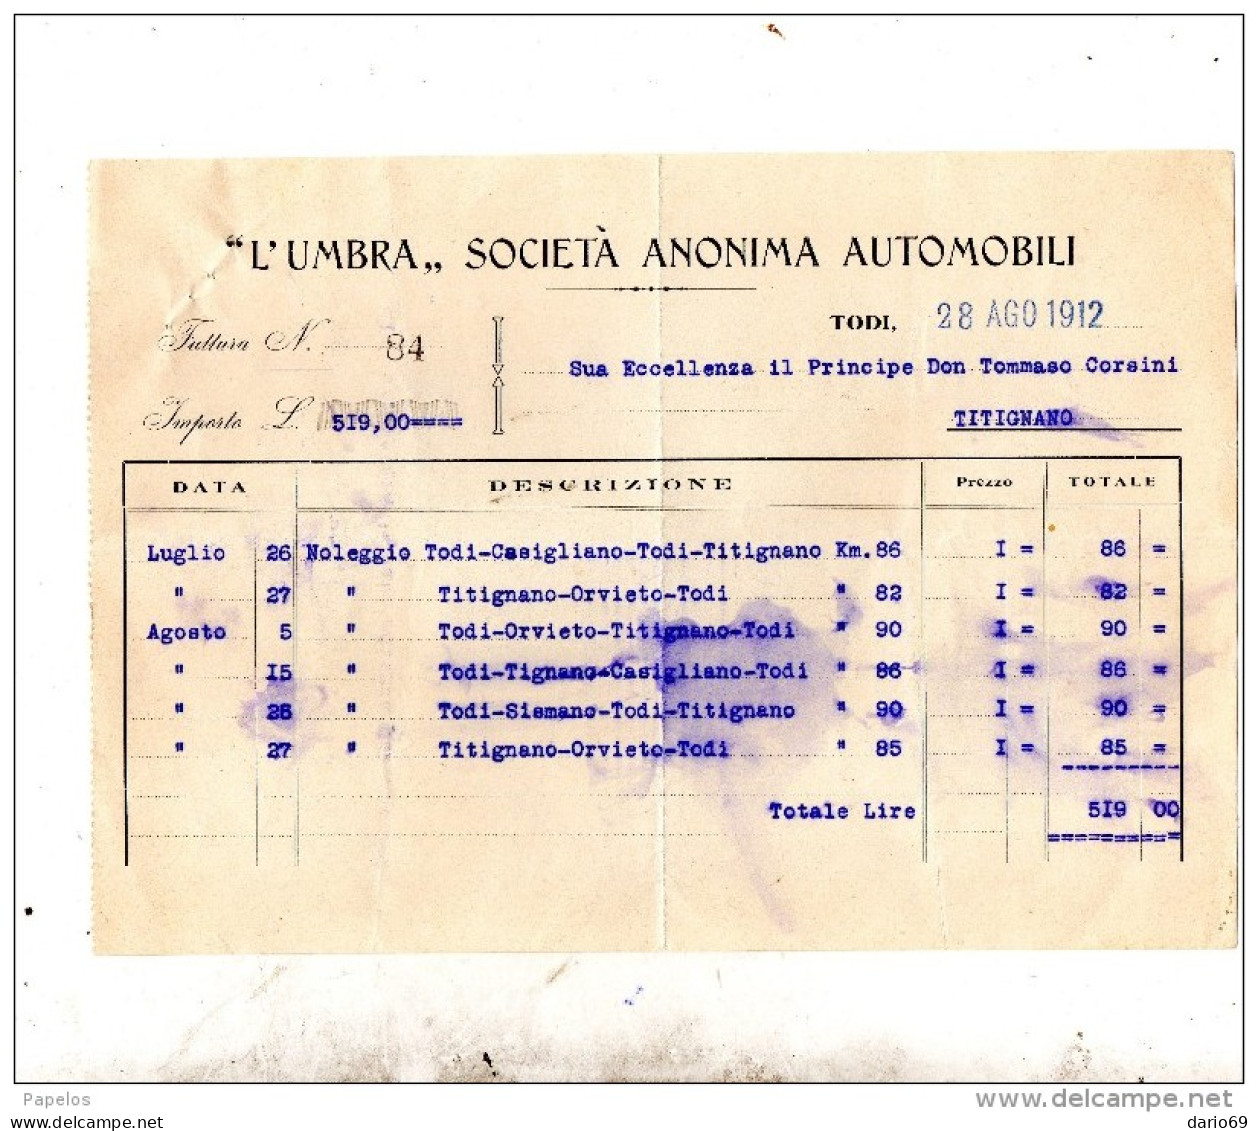 1912 TODI - SOCIETÀ ANONIMA AUTOMOBILI - Italy